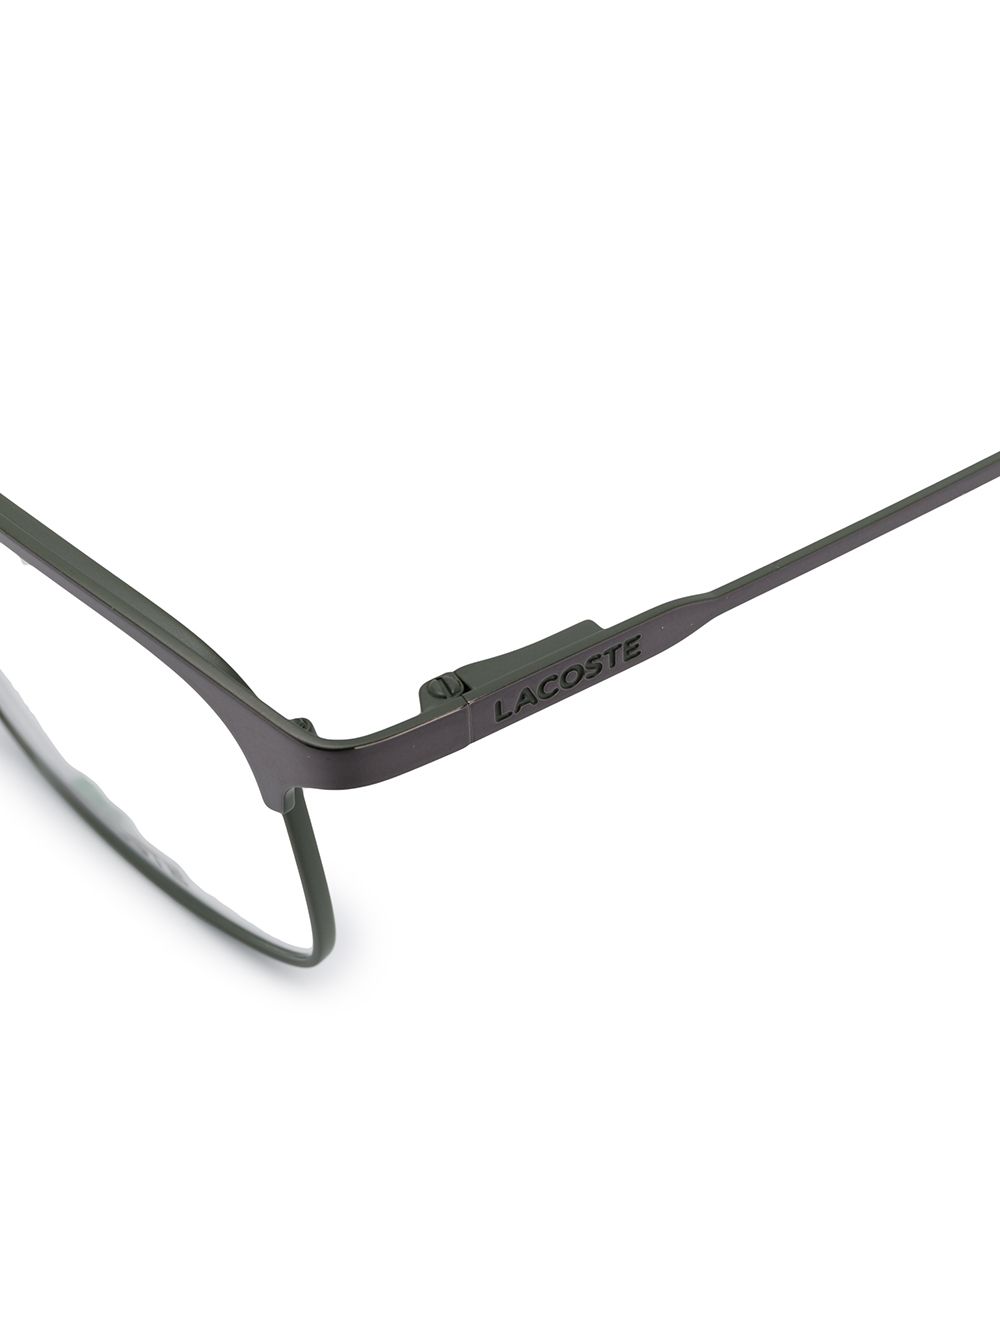 фото Lacoste очки в квадратной оправе